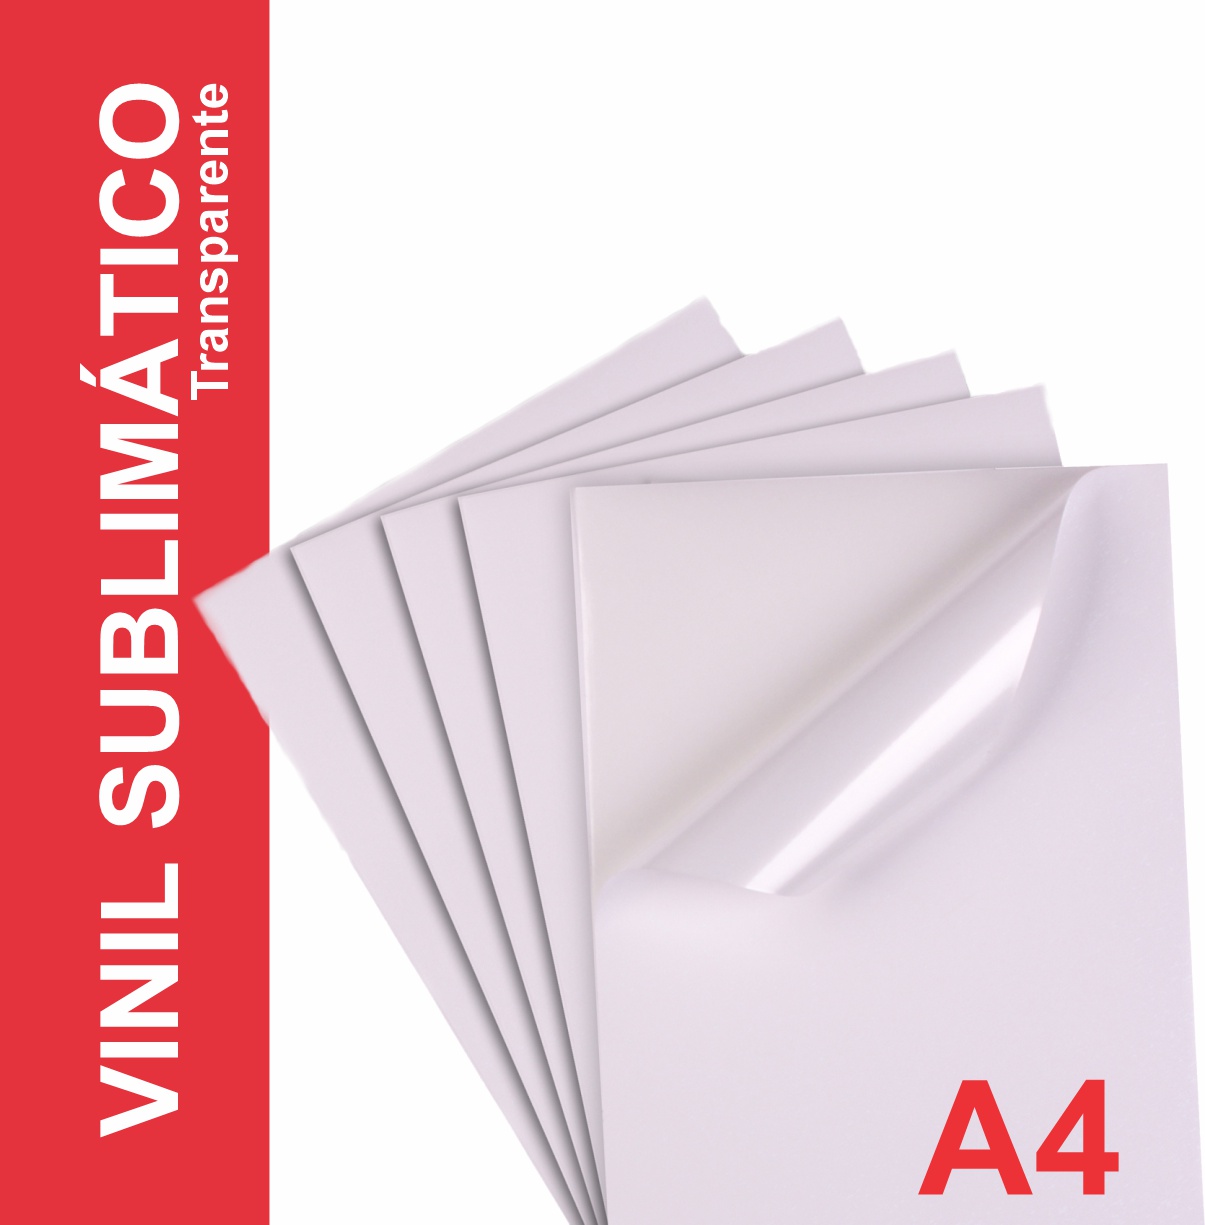 Vinil Adesivo Transparente P/ Sublimação - A4